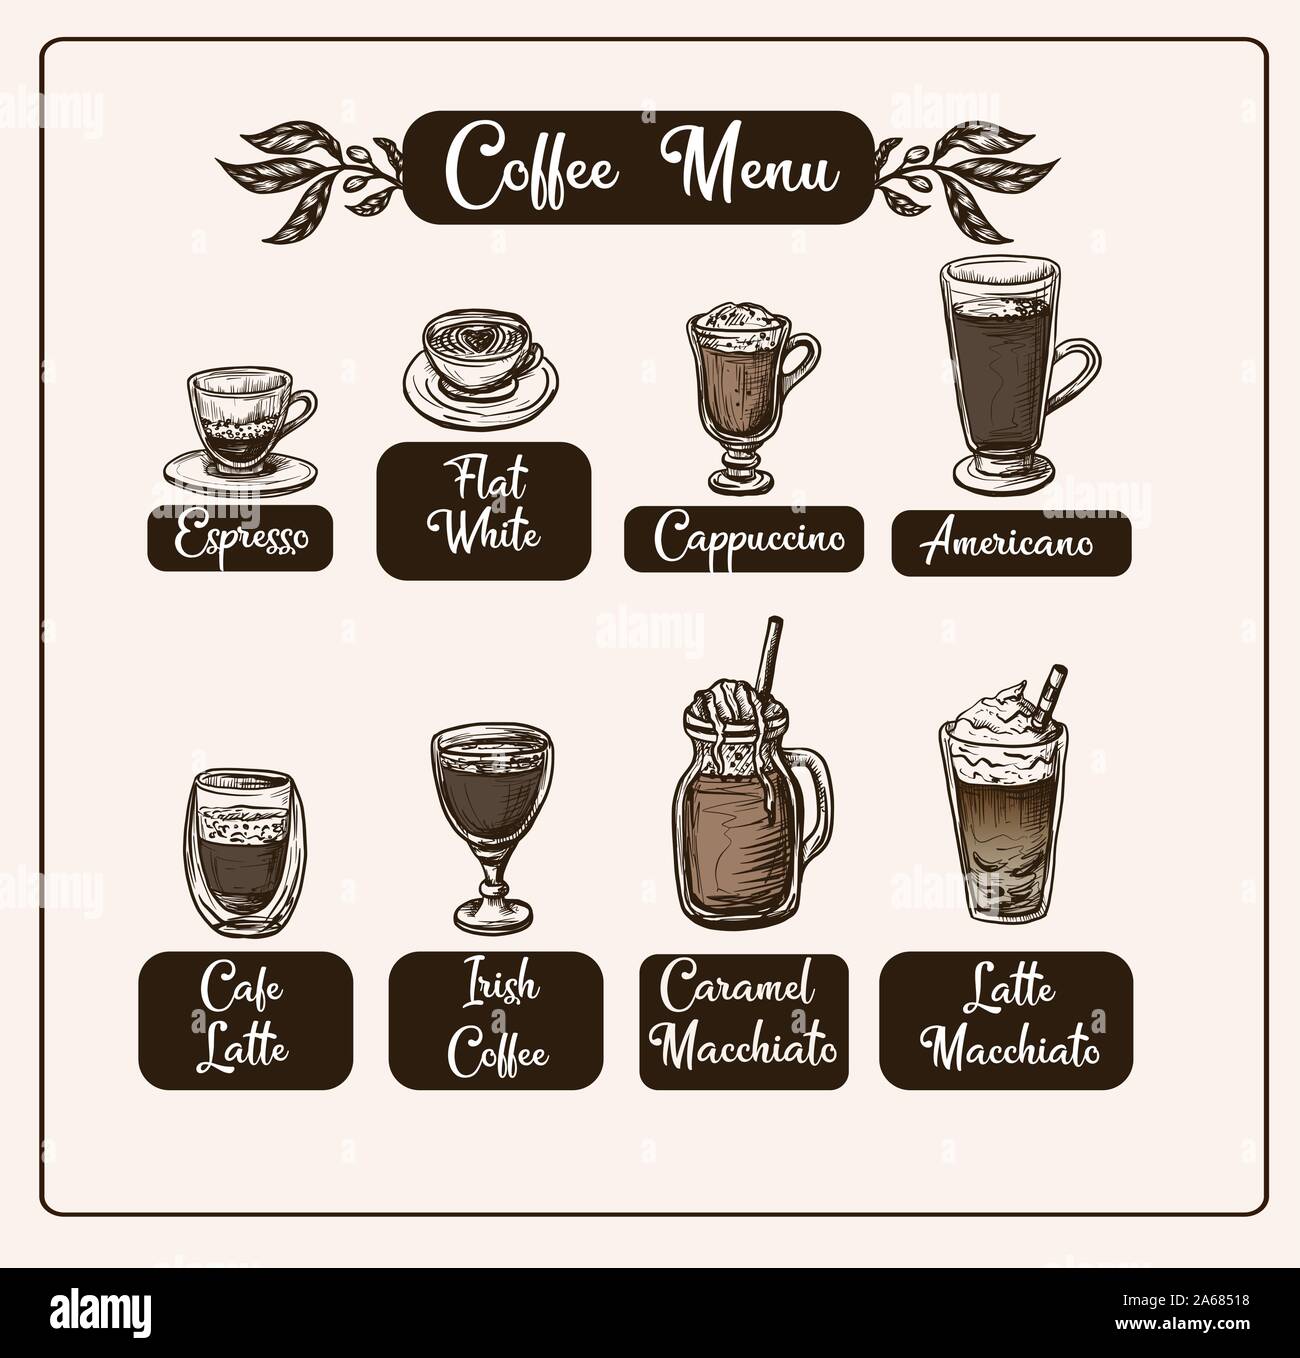 Kaffee Menü mit verschiedenen Getränken. Vektor. Stock Vektor